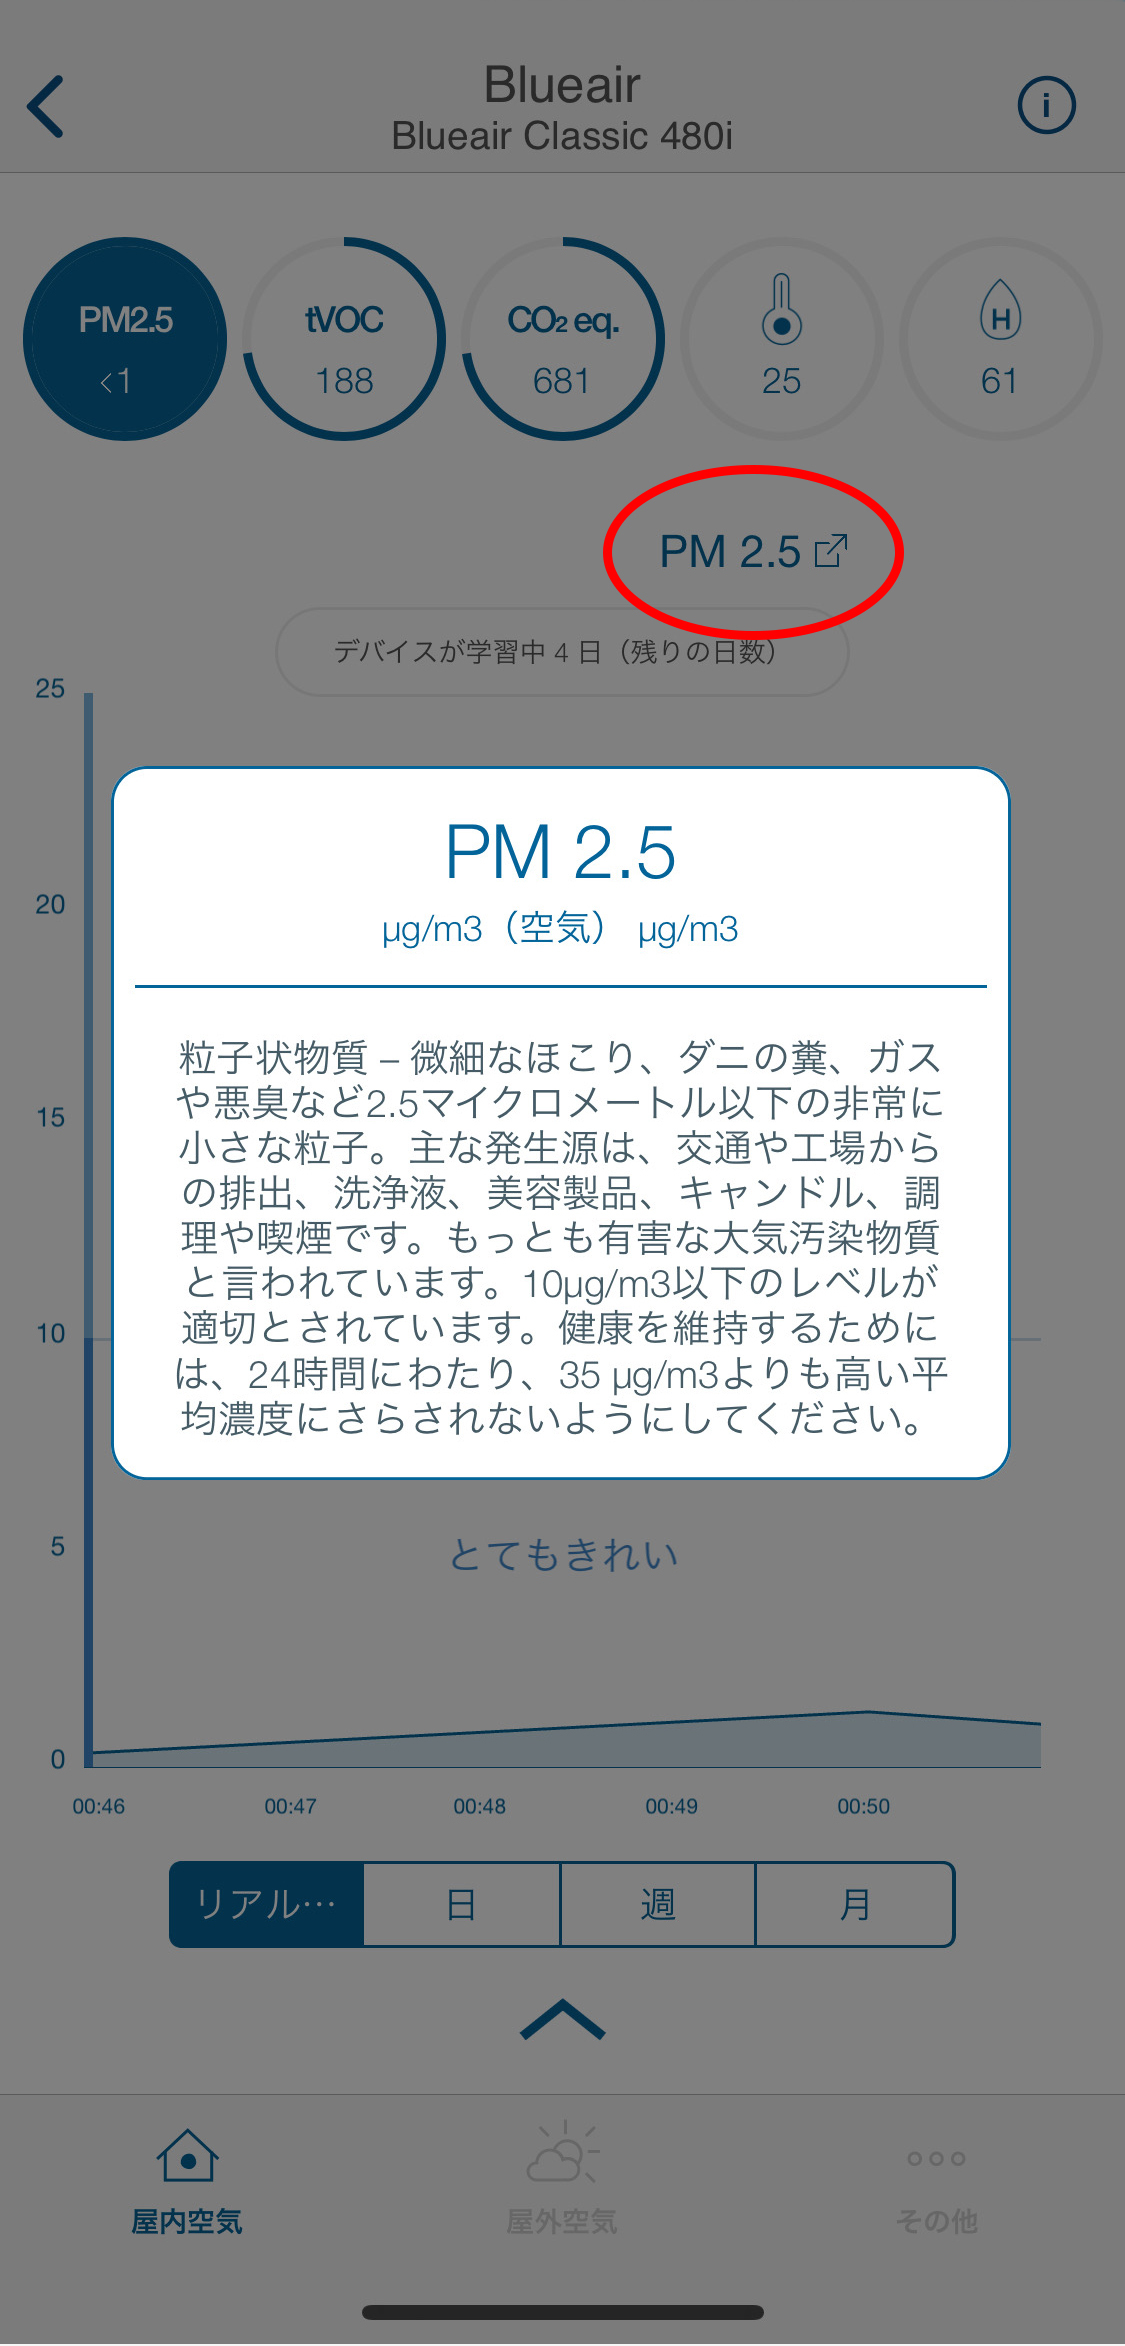 スマホアプリ/Blueair friend/PM2.5の説明